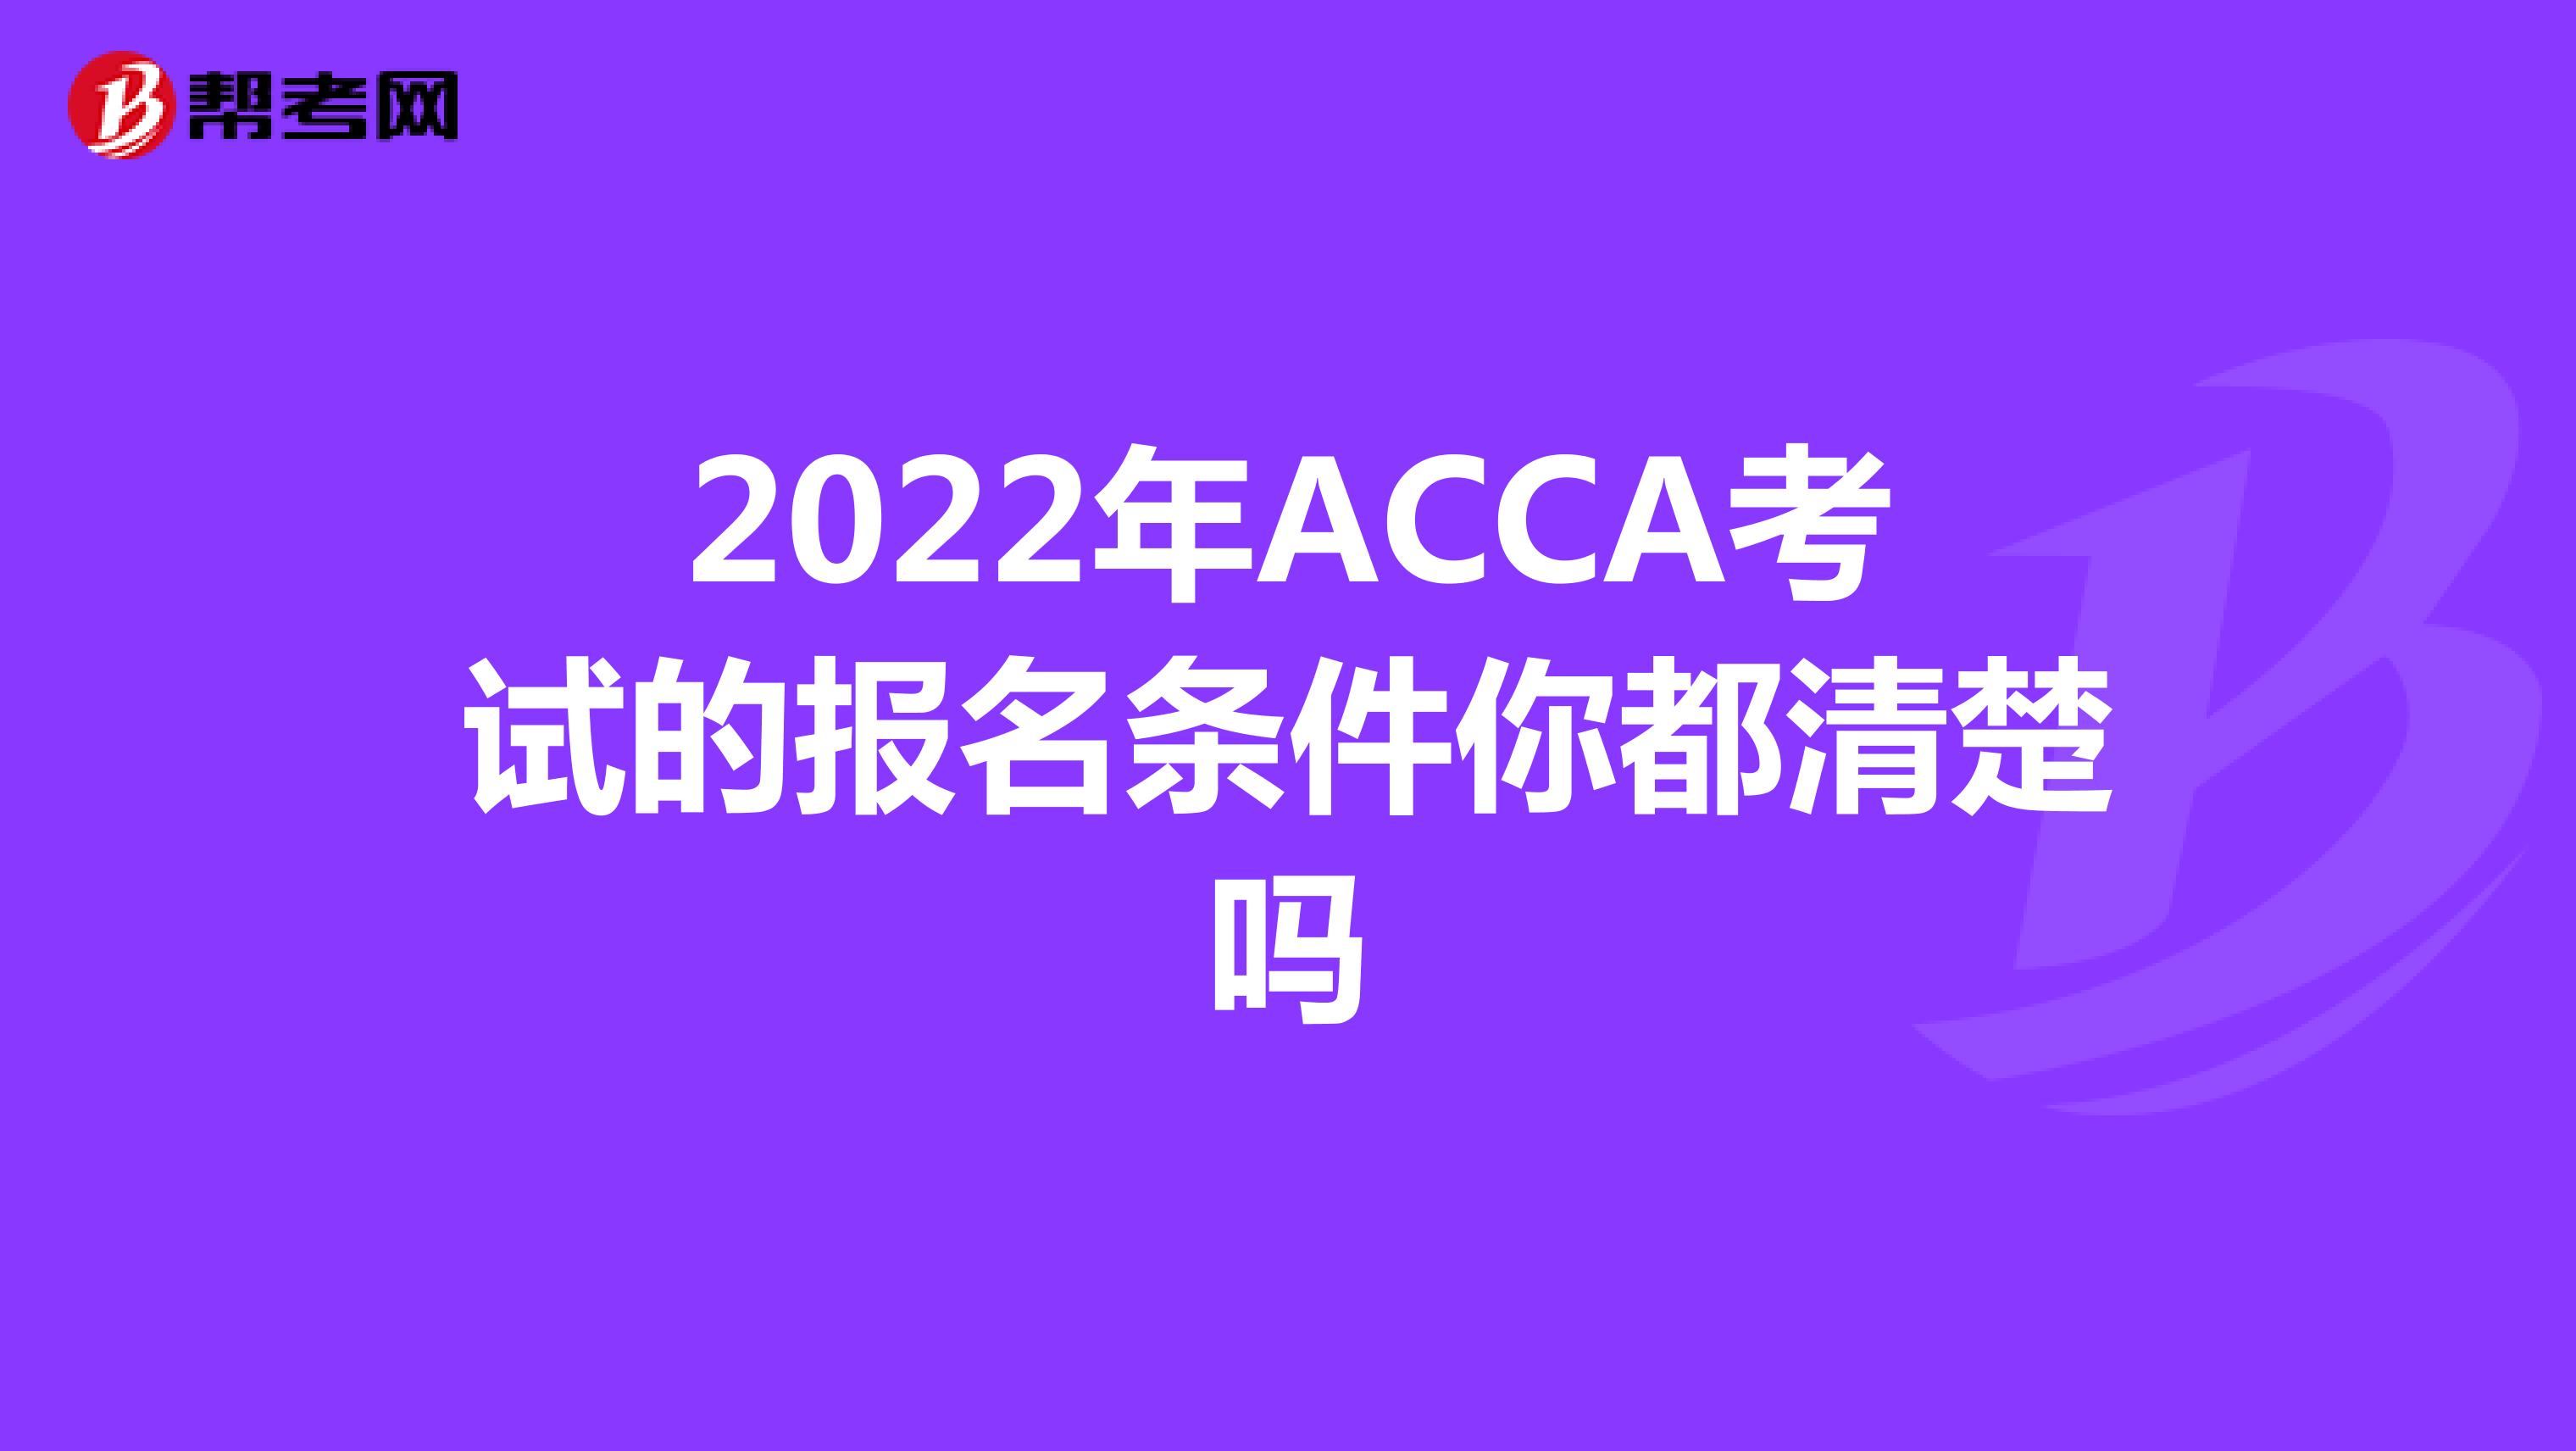 2022年ACCA考试的报名条件你都清楚吗